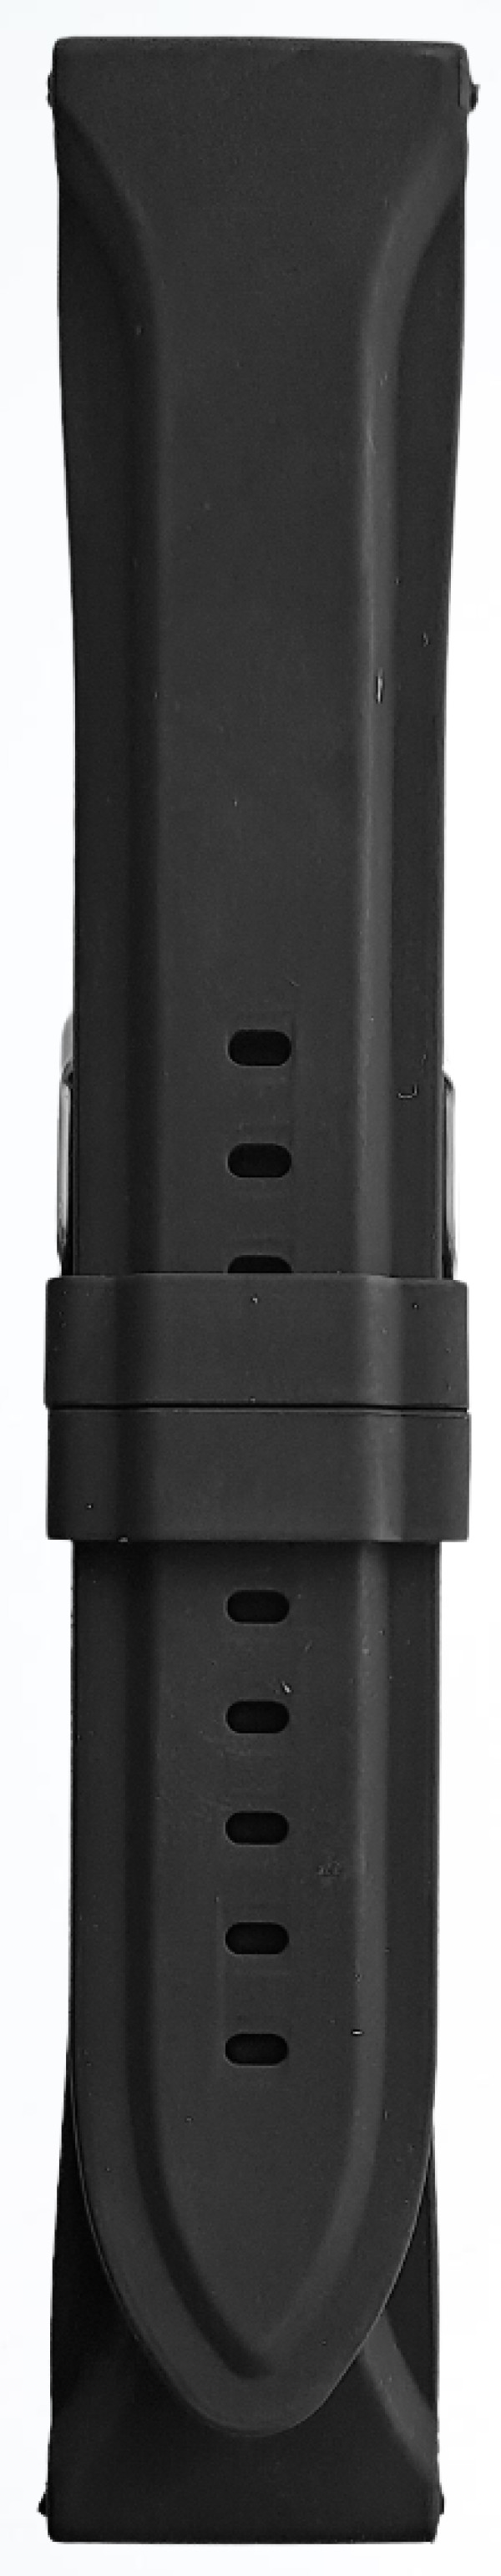 Silikonski kaiš - SK 26.08 Crna boja 26mm